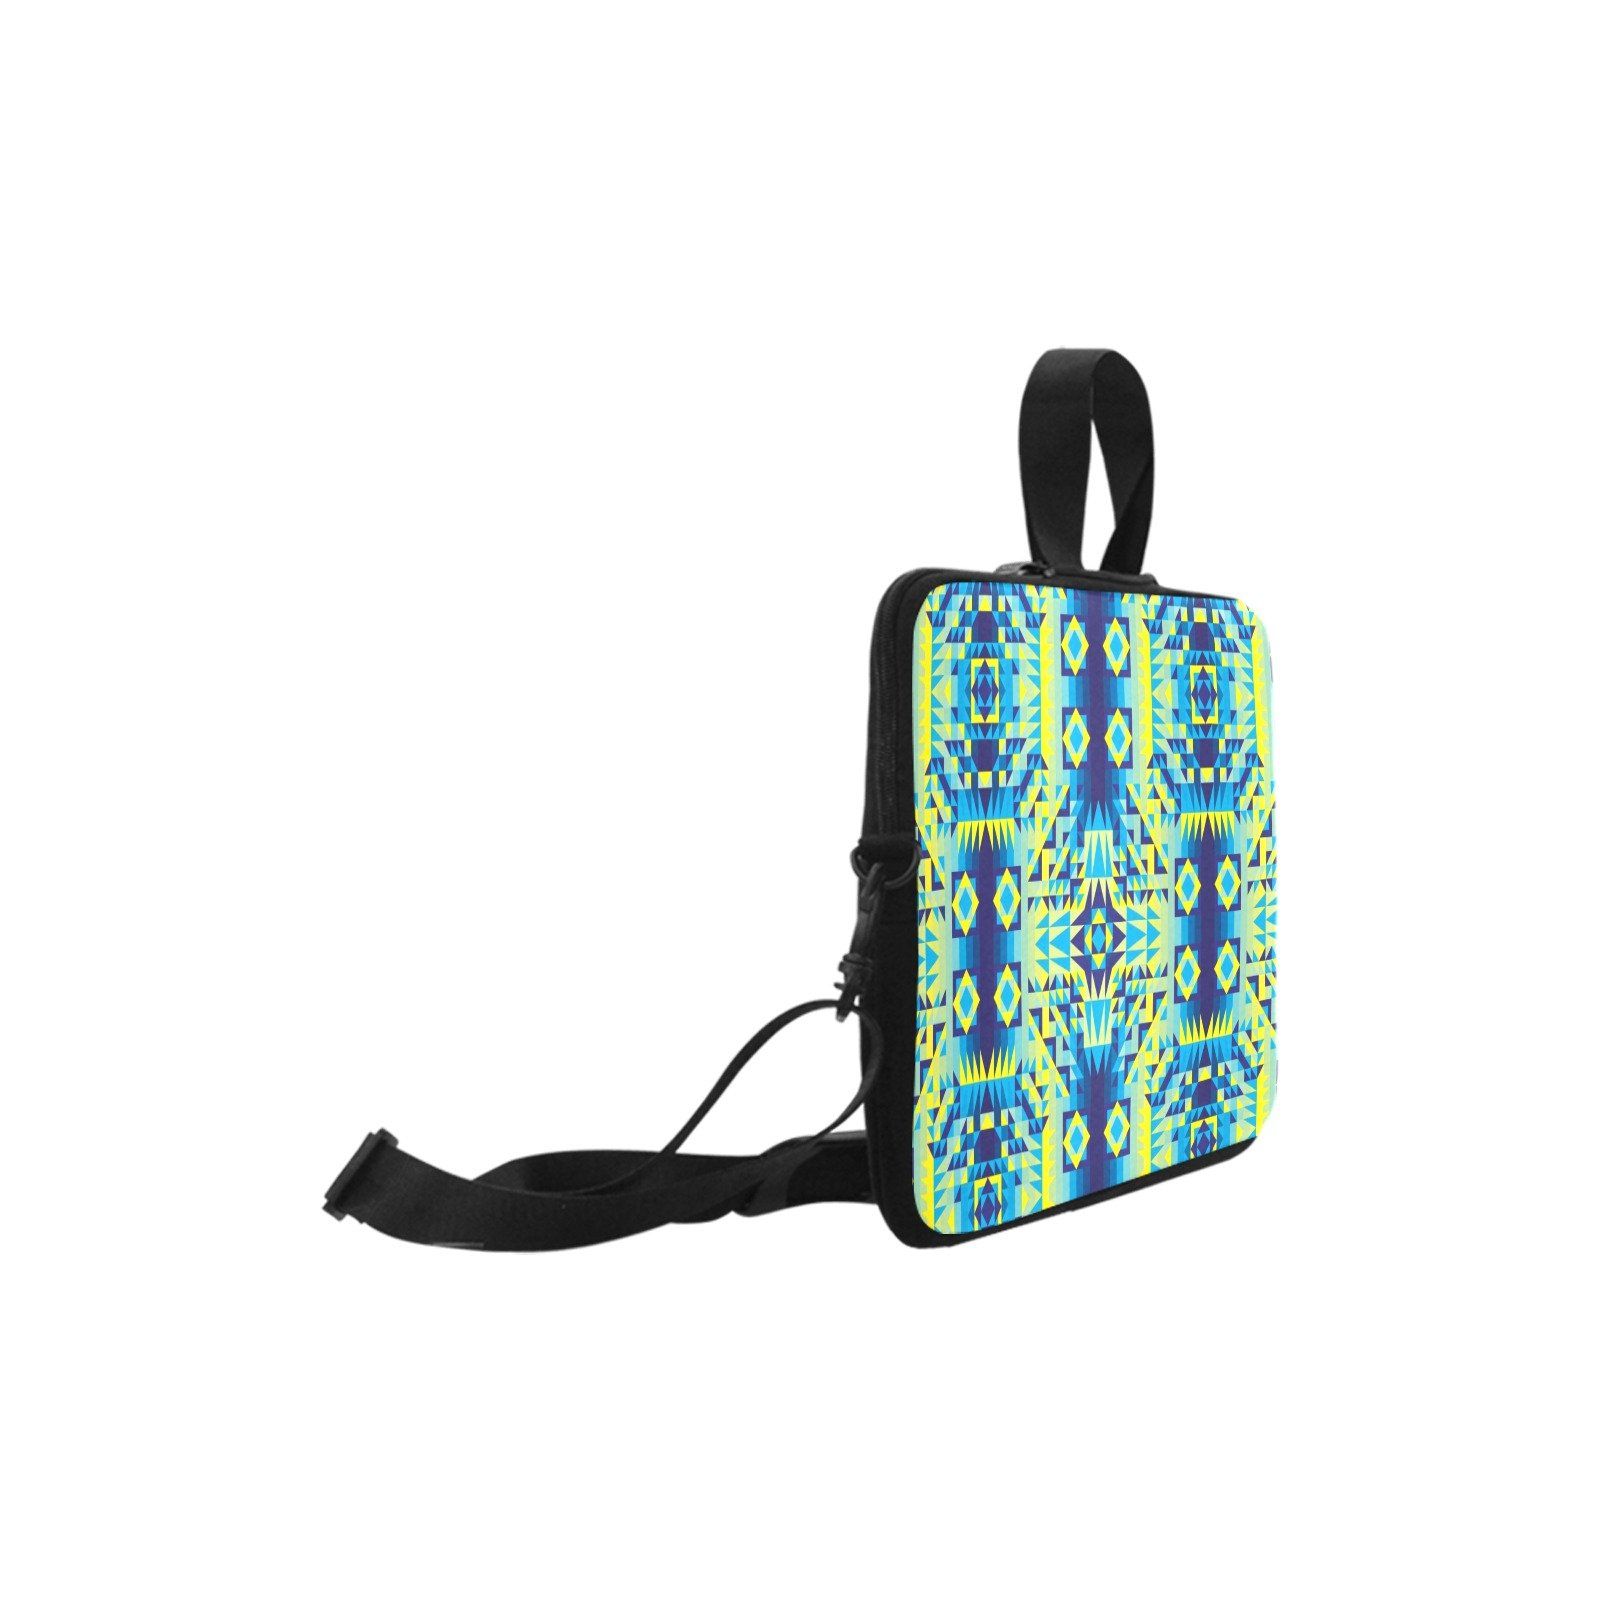 Kaleidoscope Jaune Bleu Laptop Handbags 11" bag e-joyer 